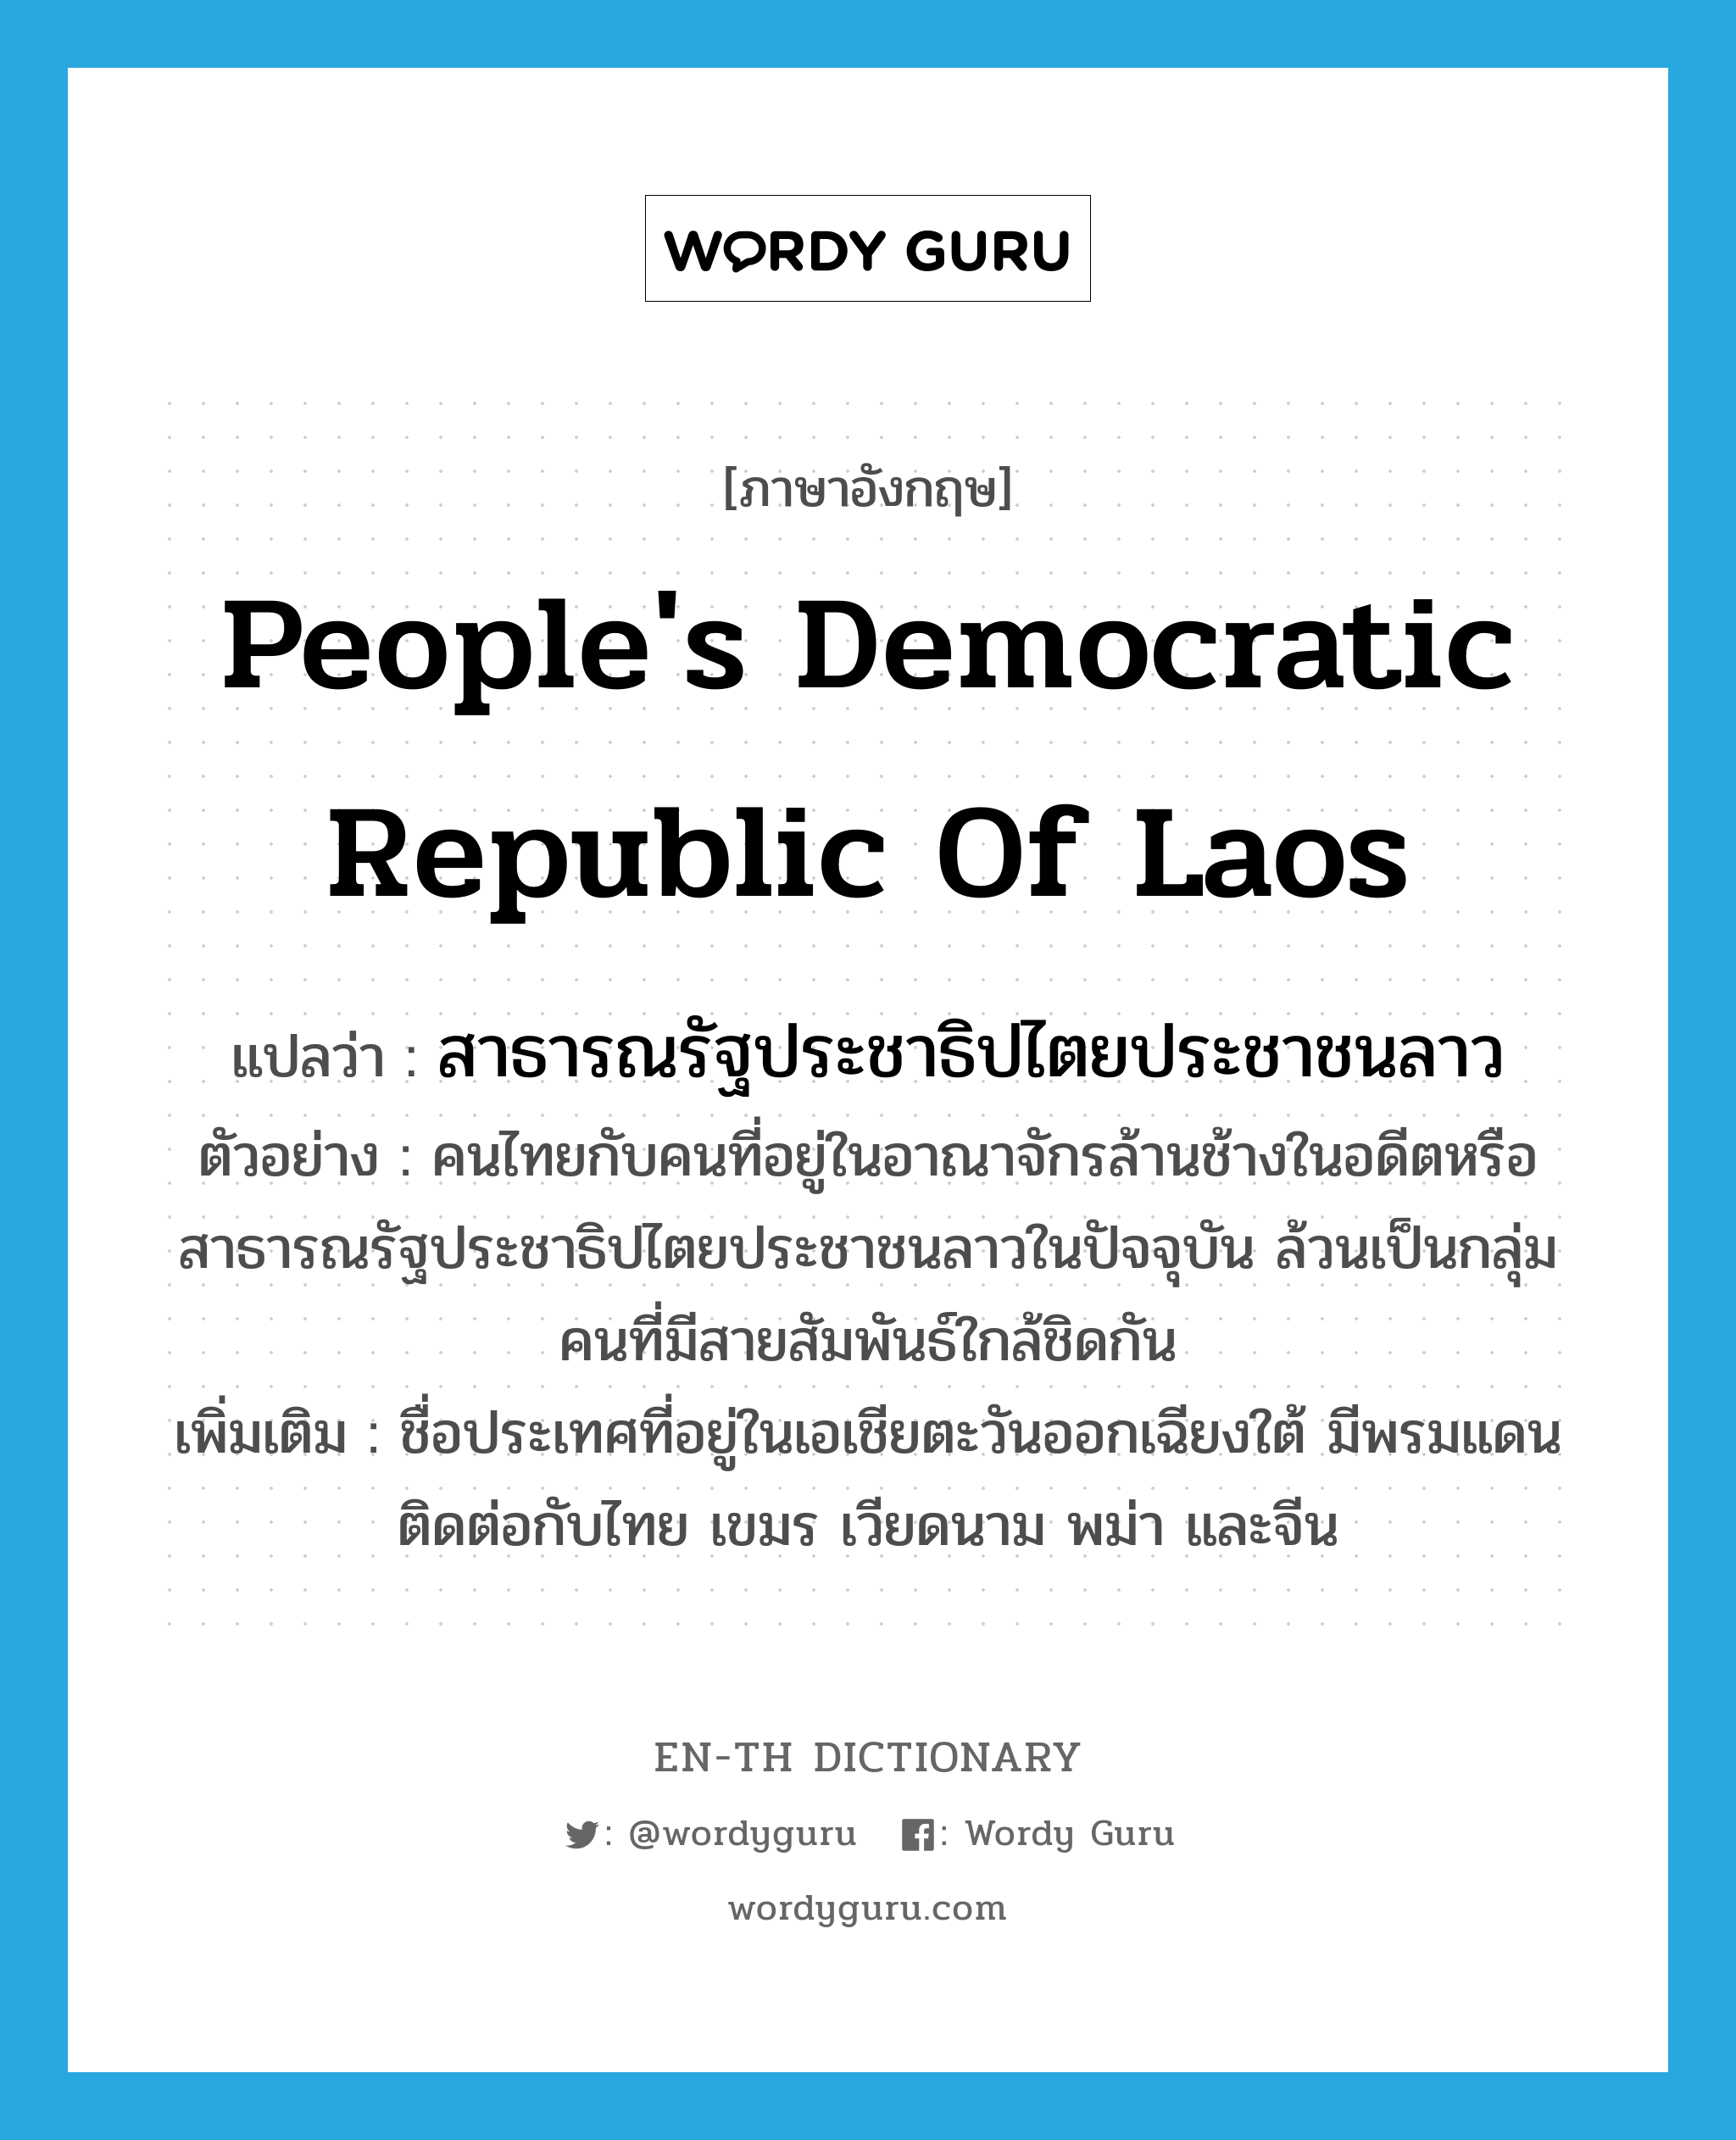 สาธารณรัฐประชาธิปไตยประชาชนลาว ภาษาอังกฤษ?, คำศัพท์ภาษาอังกฤษ สาธารณรัฐประชาธิปไตยประชาชนลาว แปลว่า People's Democratic Republic of Laos ประเภท N ตัวอย่าง คนไทยกับคนที่อยู่ในอาณาจักรล้านช้างในอดีตหรือสาธารณรัฐประชาธิปไตยประชาชนลาวในปัจจุบัน ล้วนเป็นกลุ่มคนที่มีสายสัมพันธ์ใกล้ชิดกัน เพิ่มเติม ชื่อประเทศที่อยู่ในเอเชียตะวันออกเฉียงใต้ มีพรมแดนติดต่อกับไทย เขมร เวียดนาม พม่า และจีน หมวด N